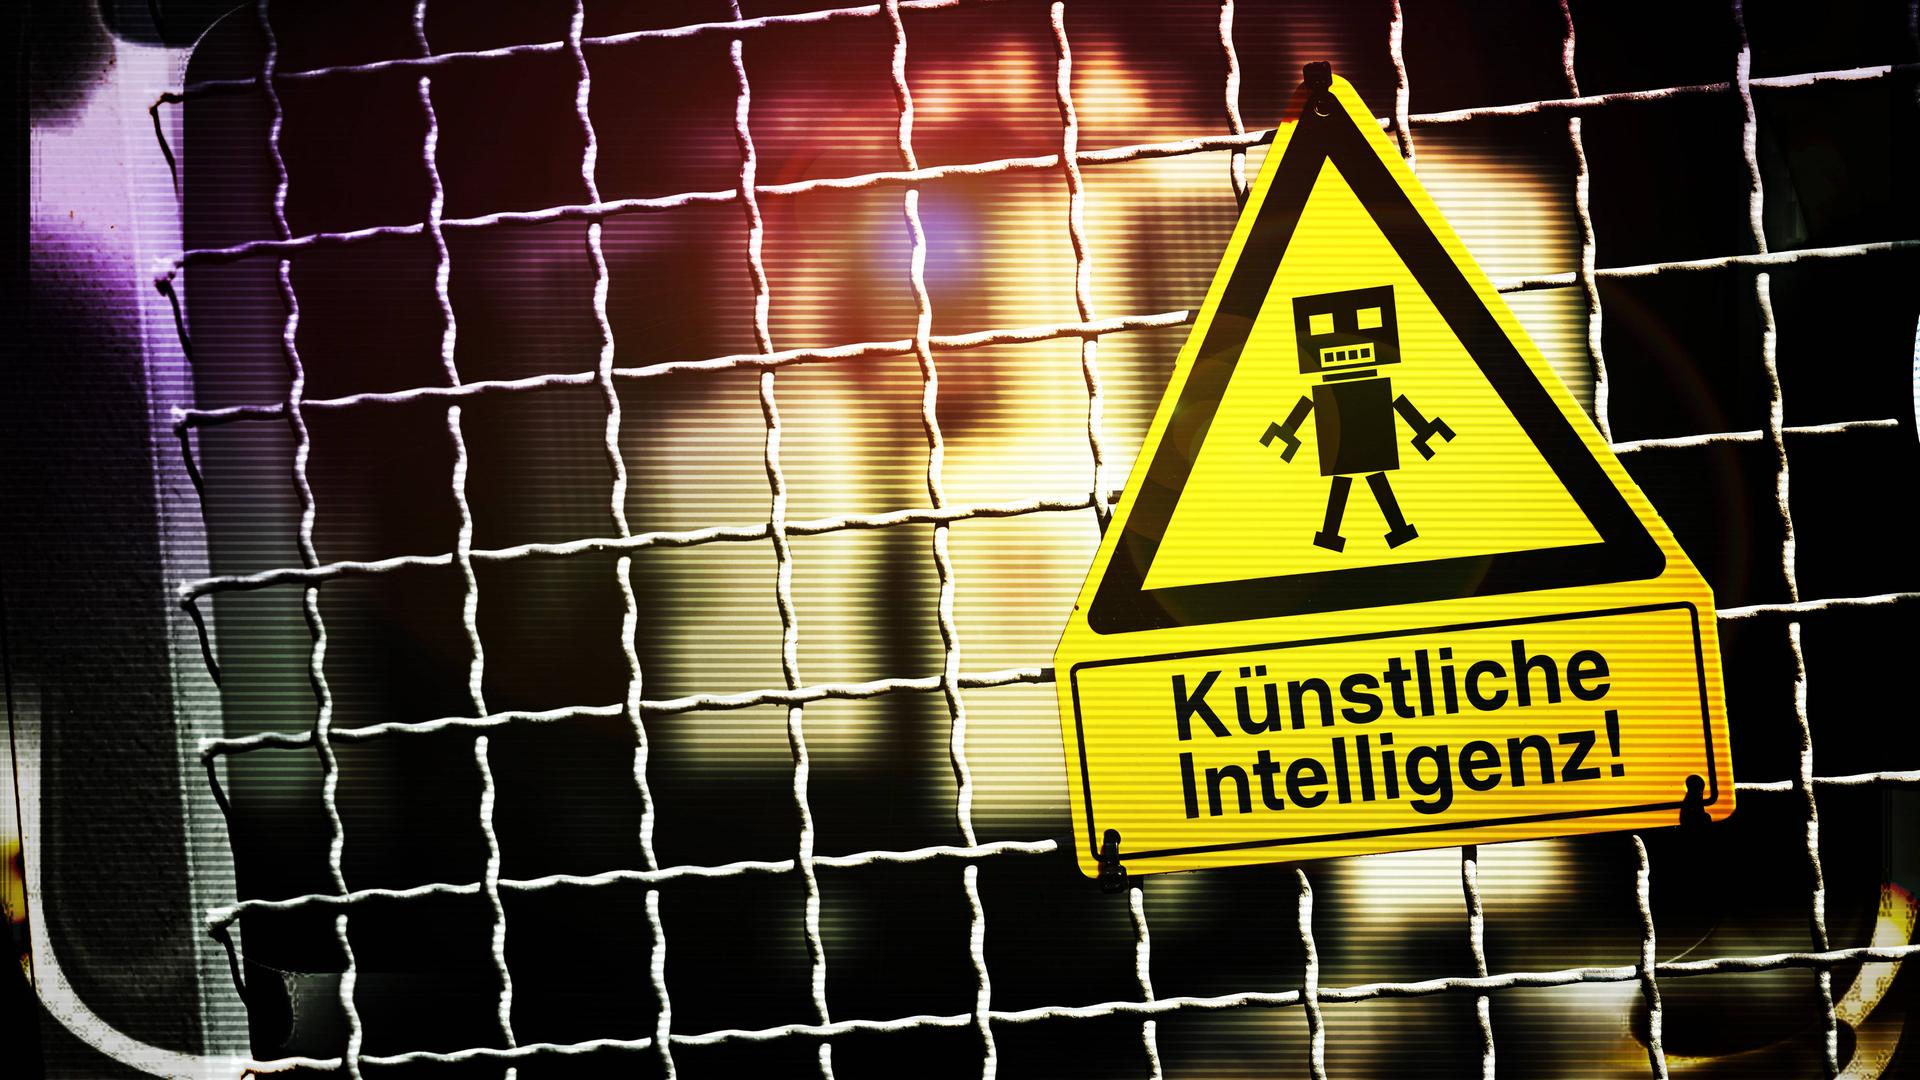 Die Fotomontage zeigt eine Roboterfigur auf einem Warnschild mit der Aufschrift "Künstliche Intelligenz". Das Schild hängt an einem Zaun.